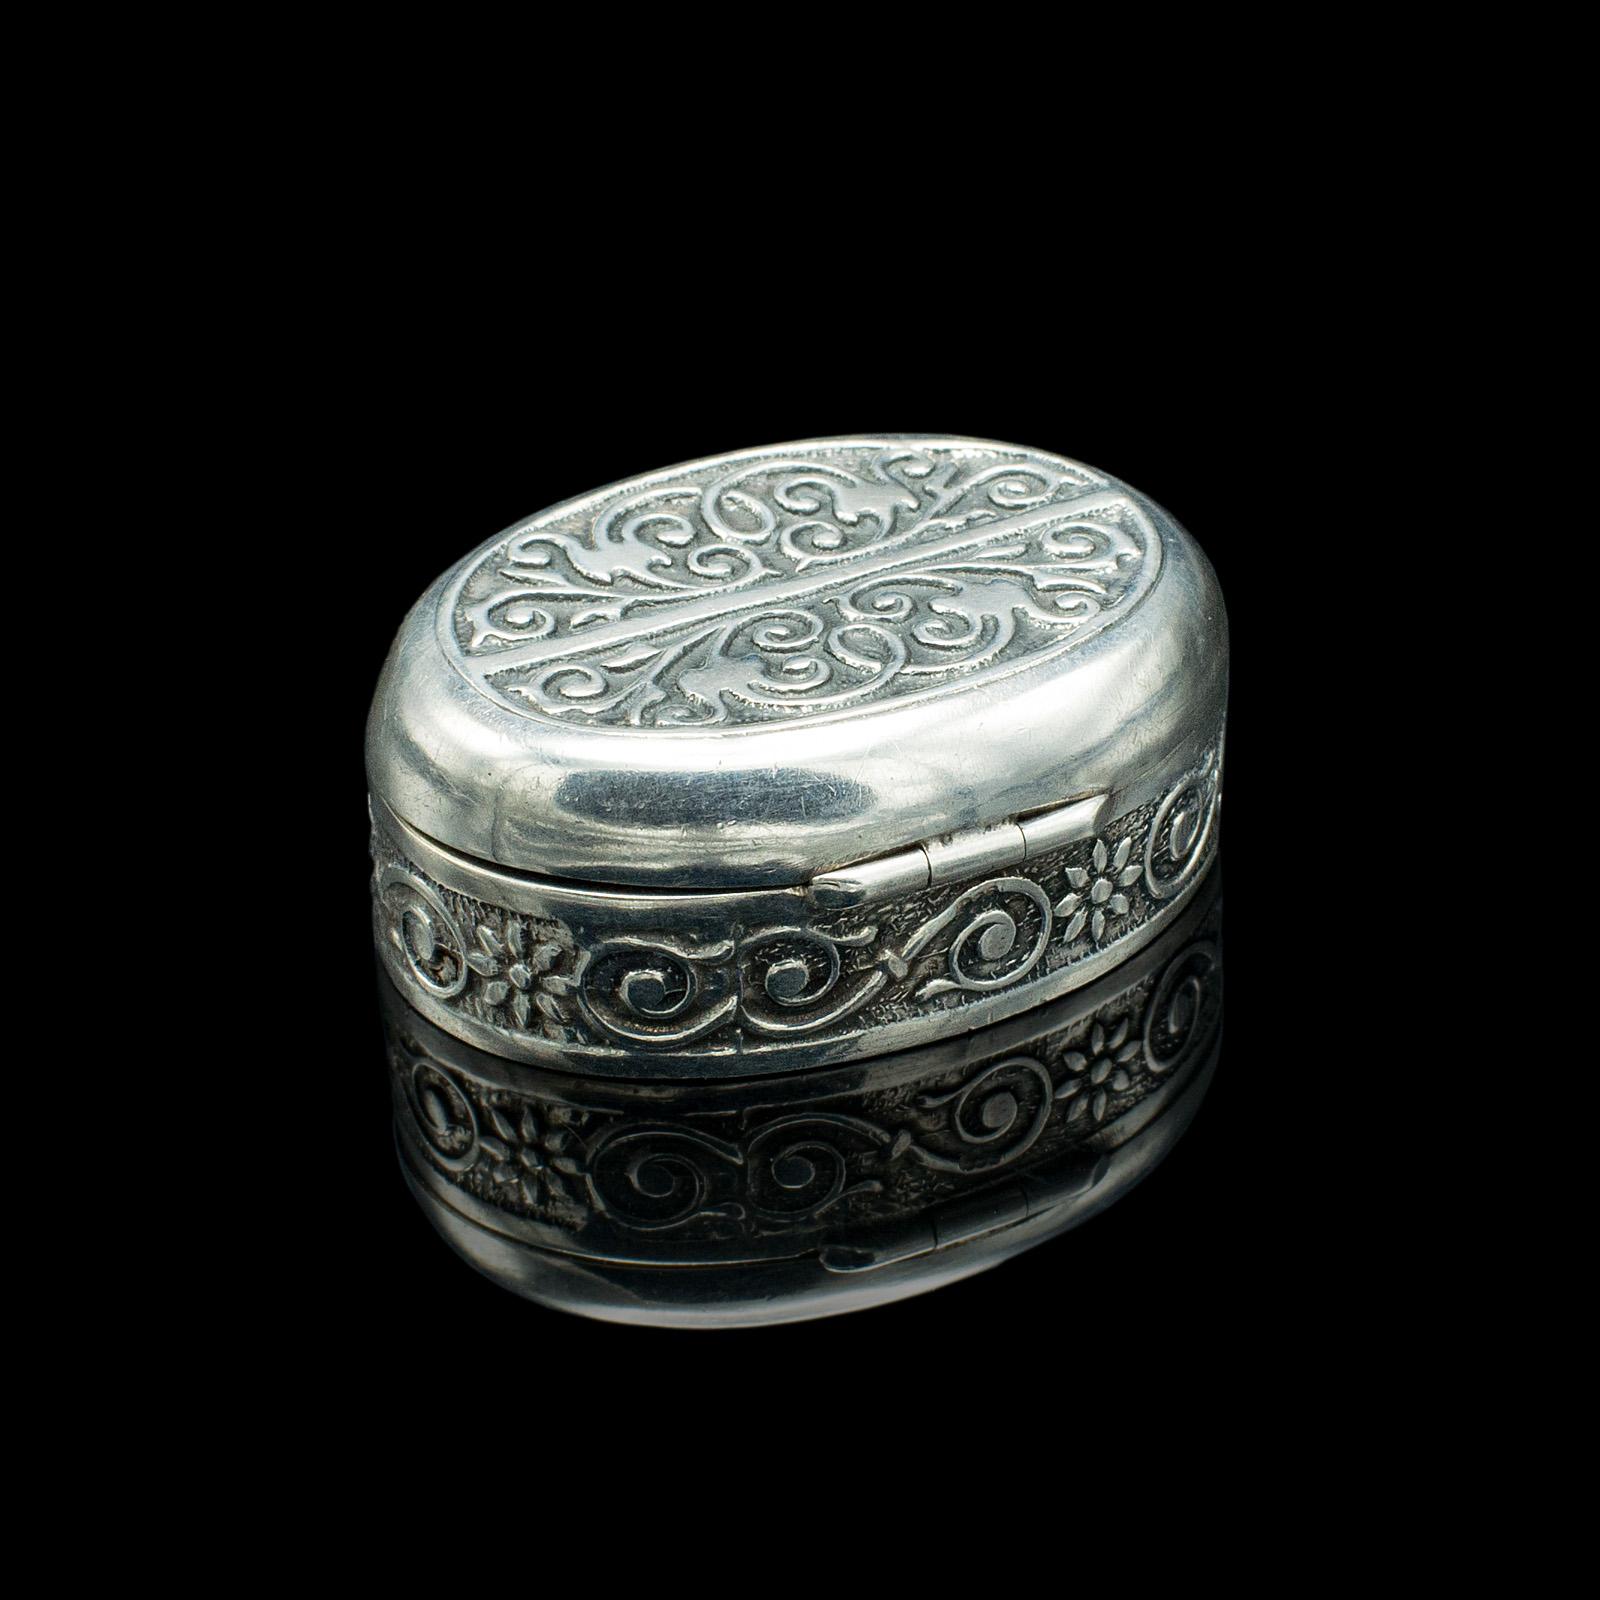 20th Century Small Antique Snuff Pot, Continental, Silver, Pill Box, Art Nouveau, Victorian